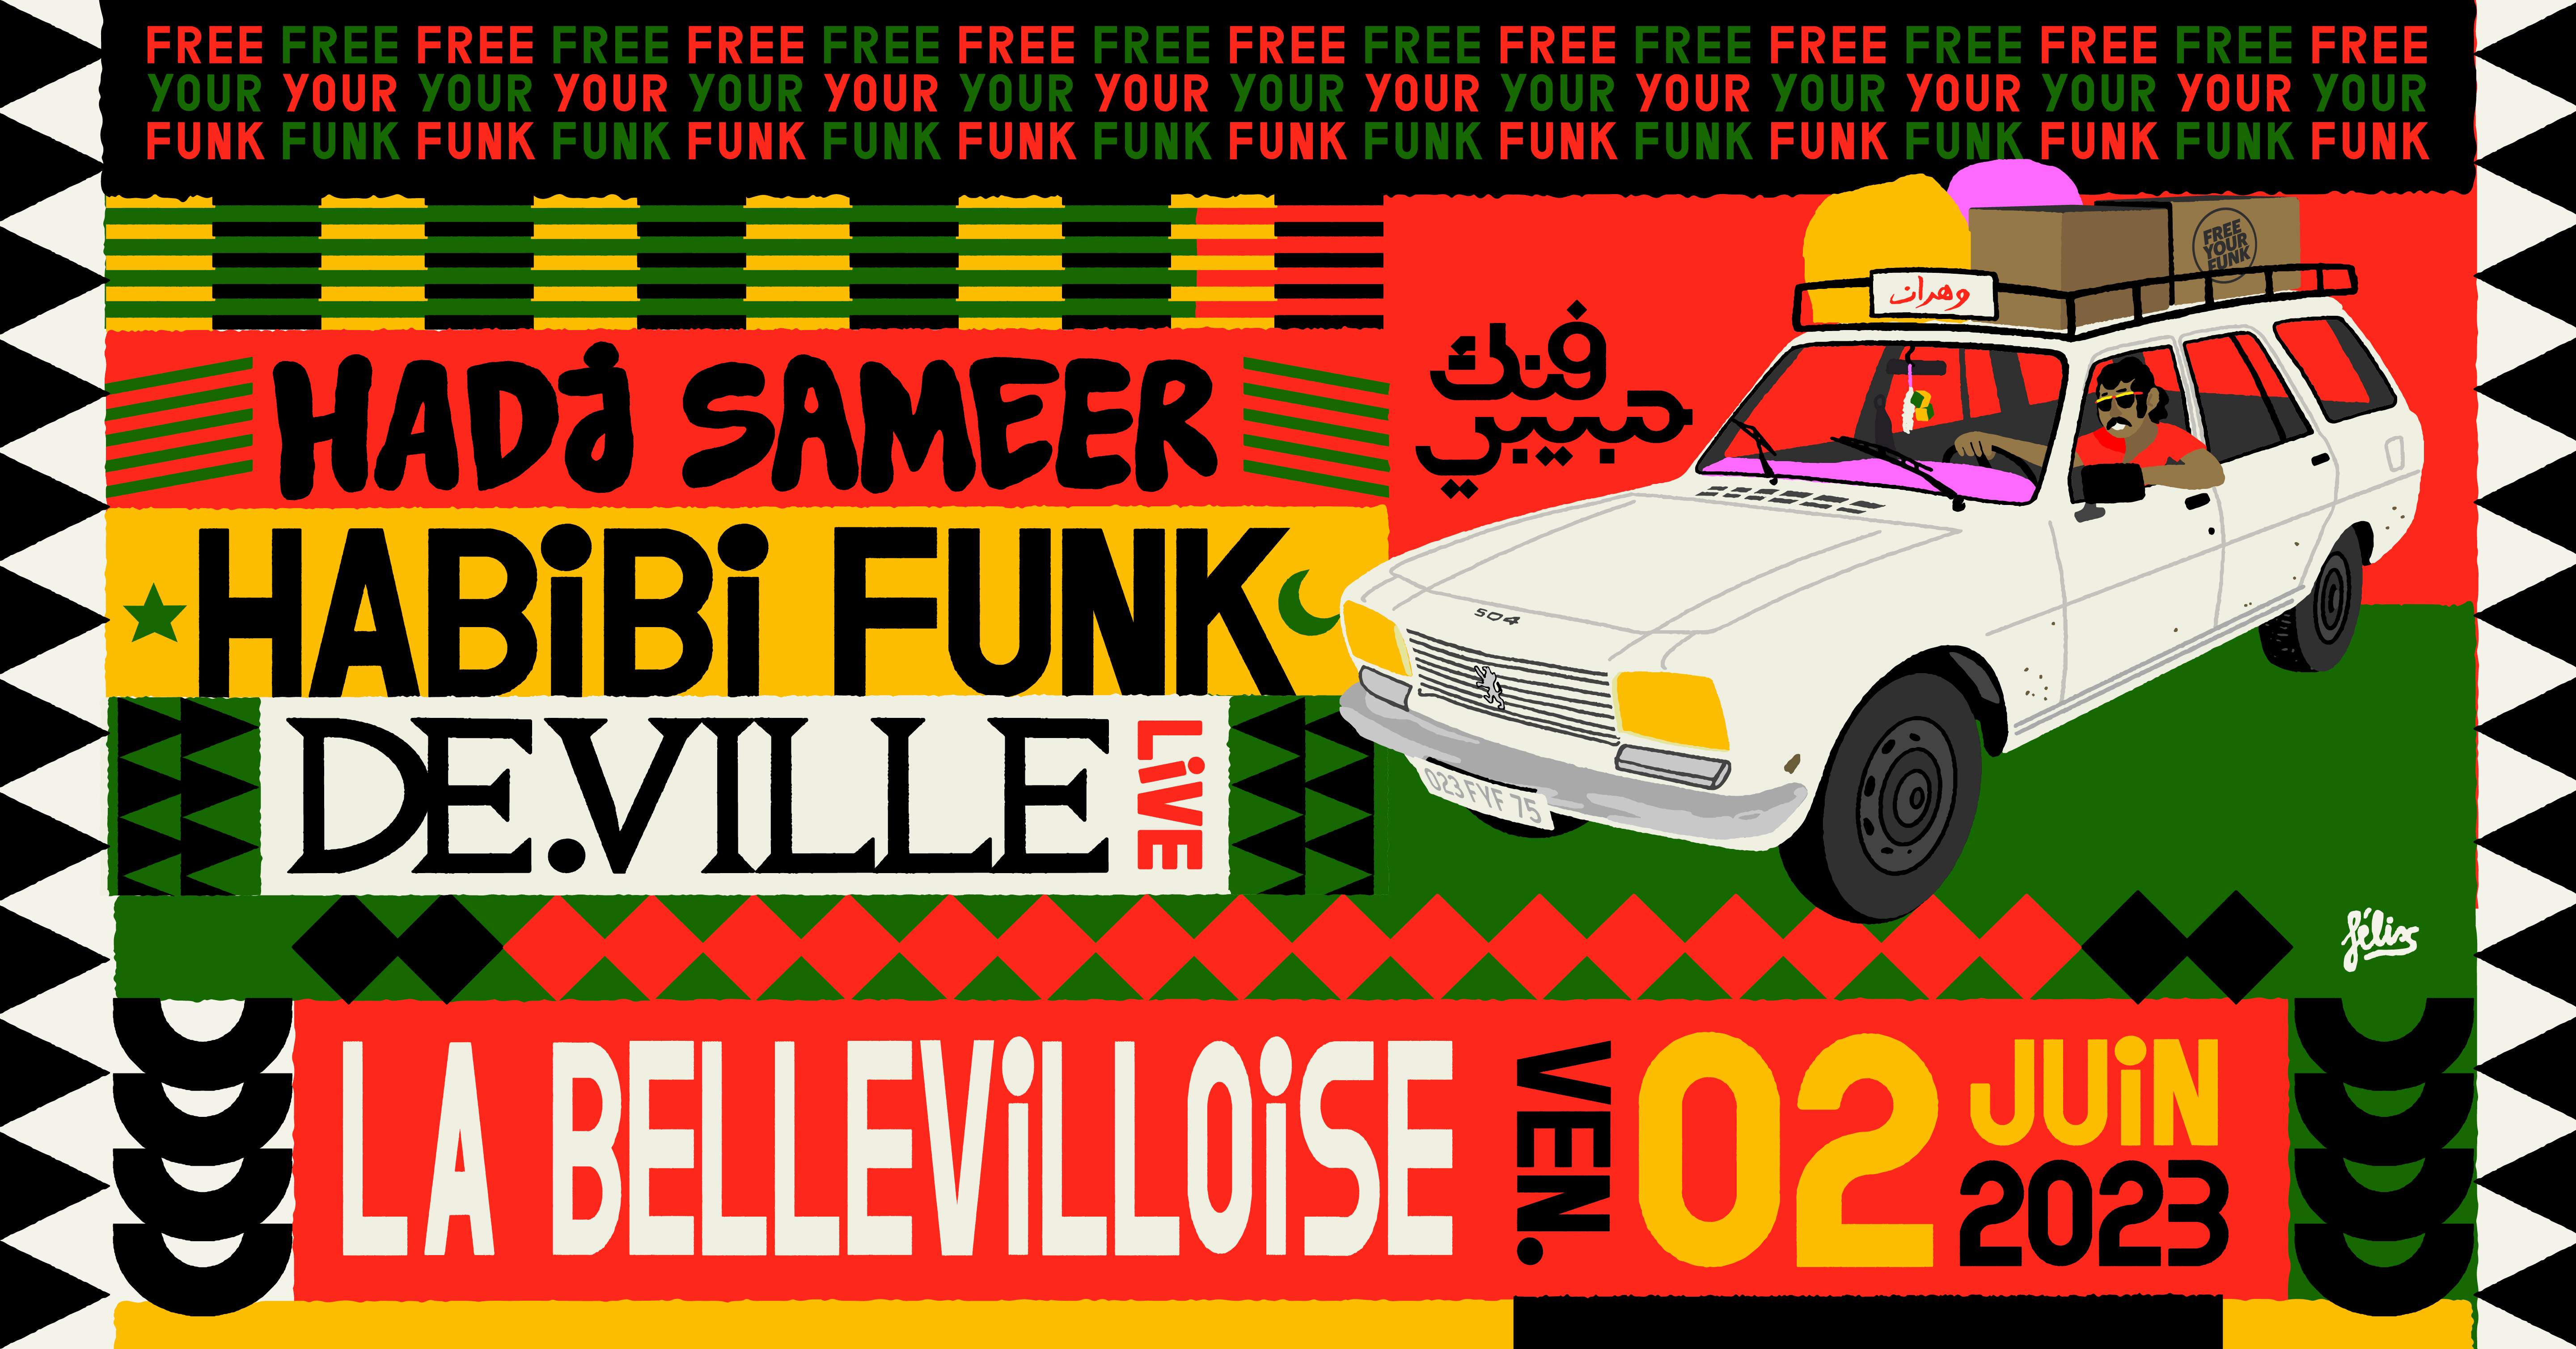 Free Your Funk: Habibi Funk, Hadj Sameer, De.Ville (live) - フライヤー裏